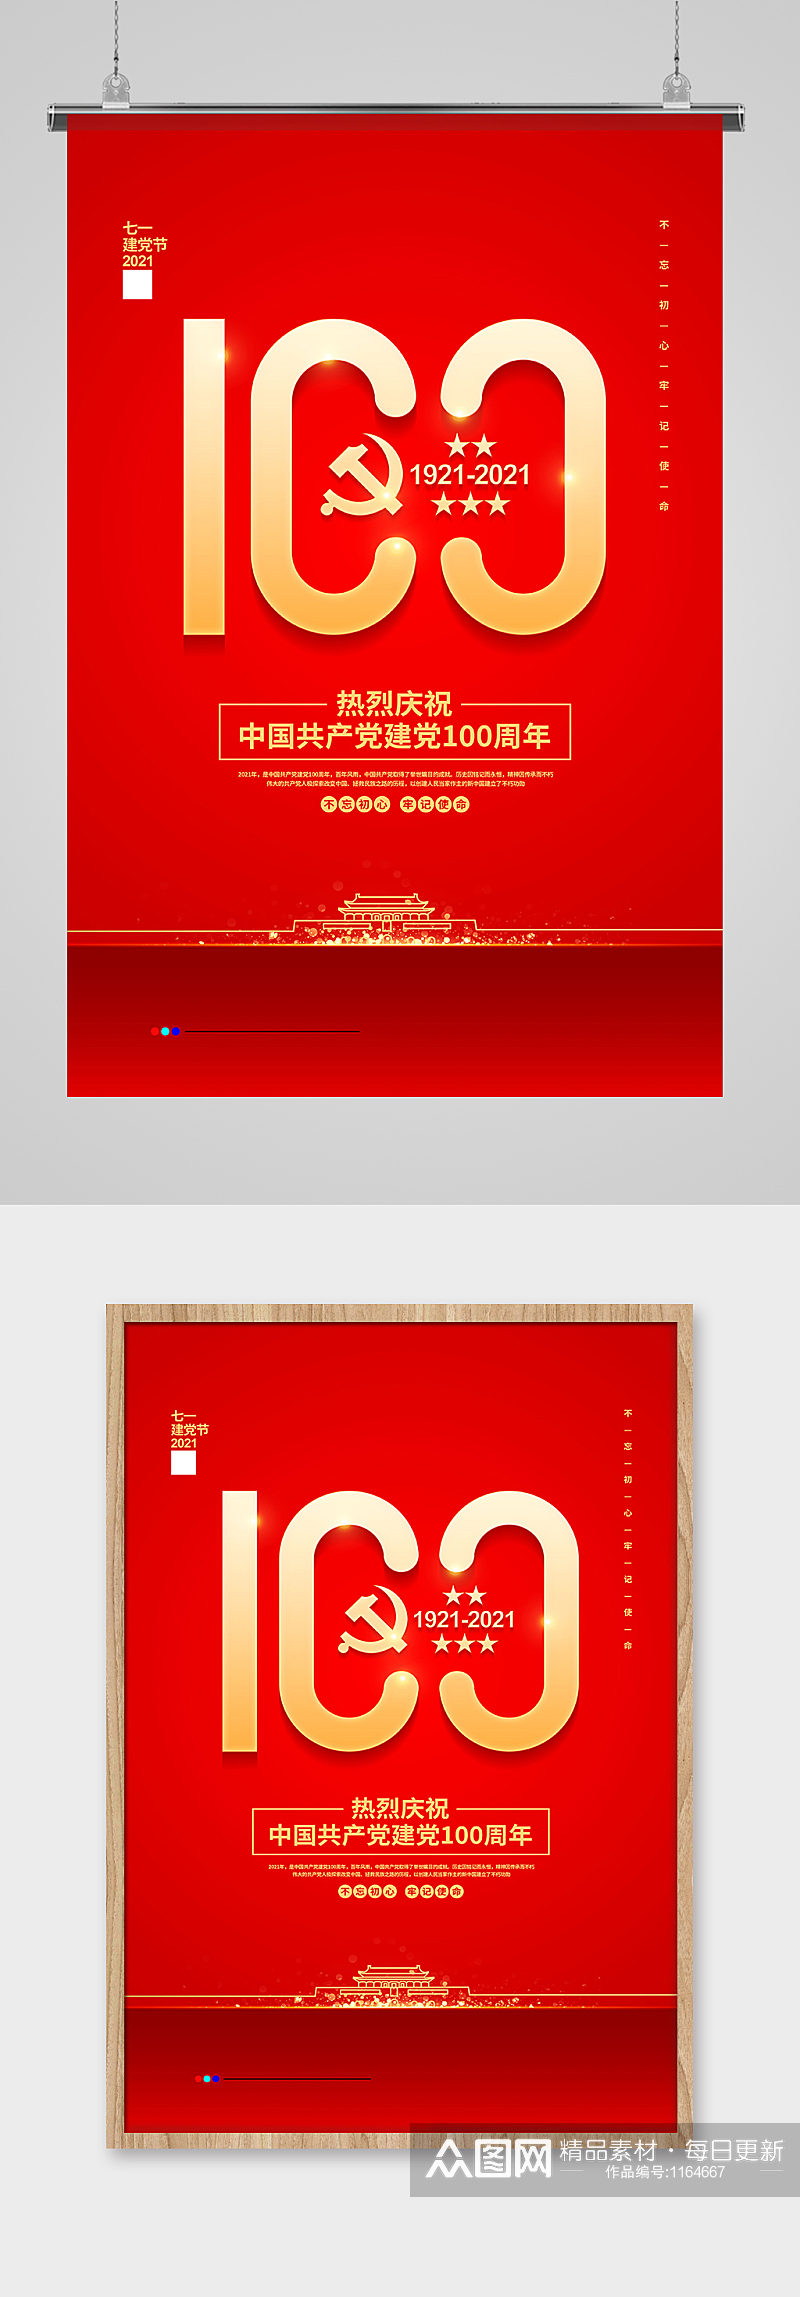 红色简约建党100周年建党节宣传海报设计素材